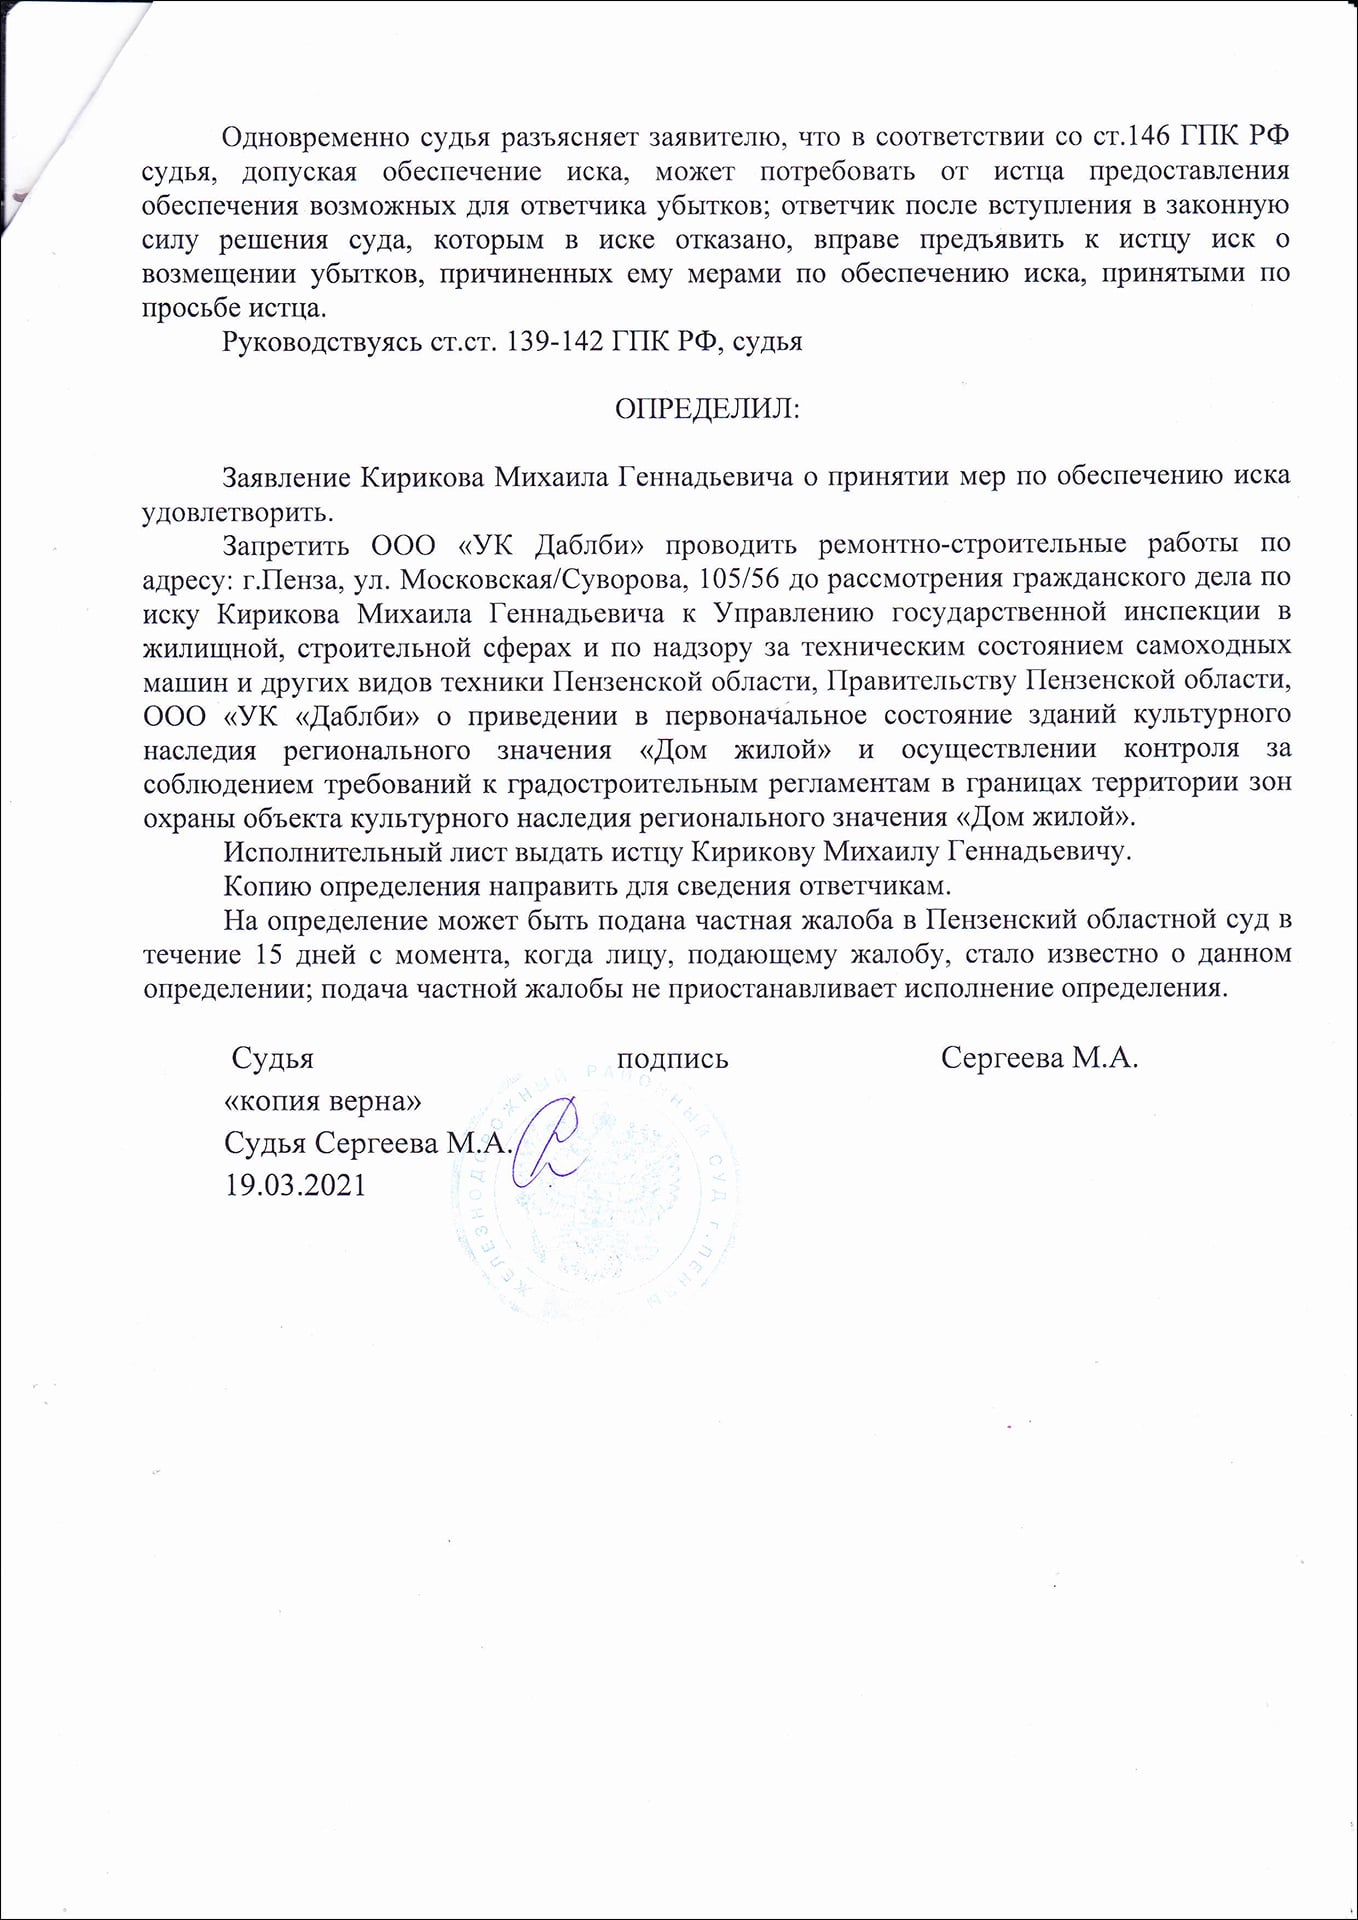 Суд приостановил строительные работы здания на Московской 105